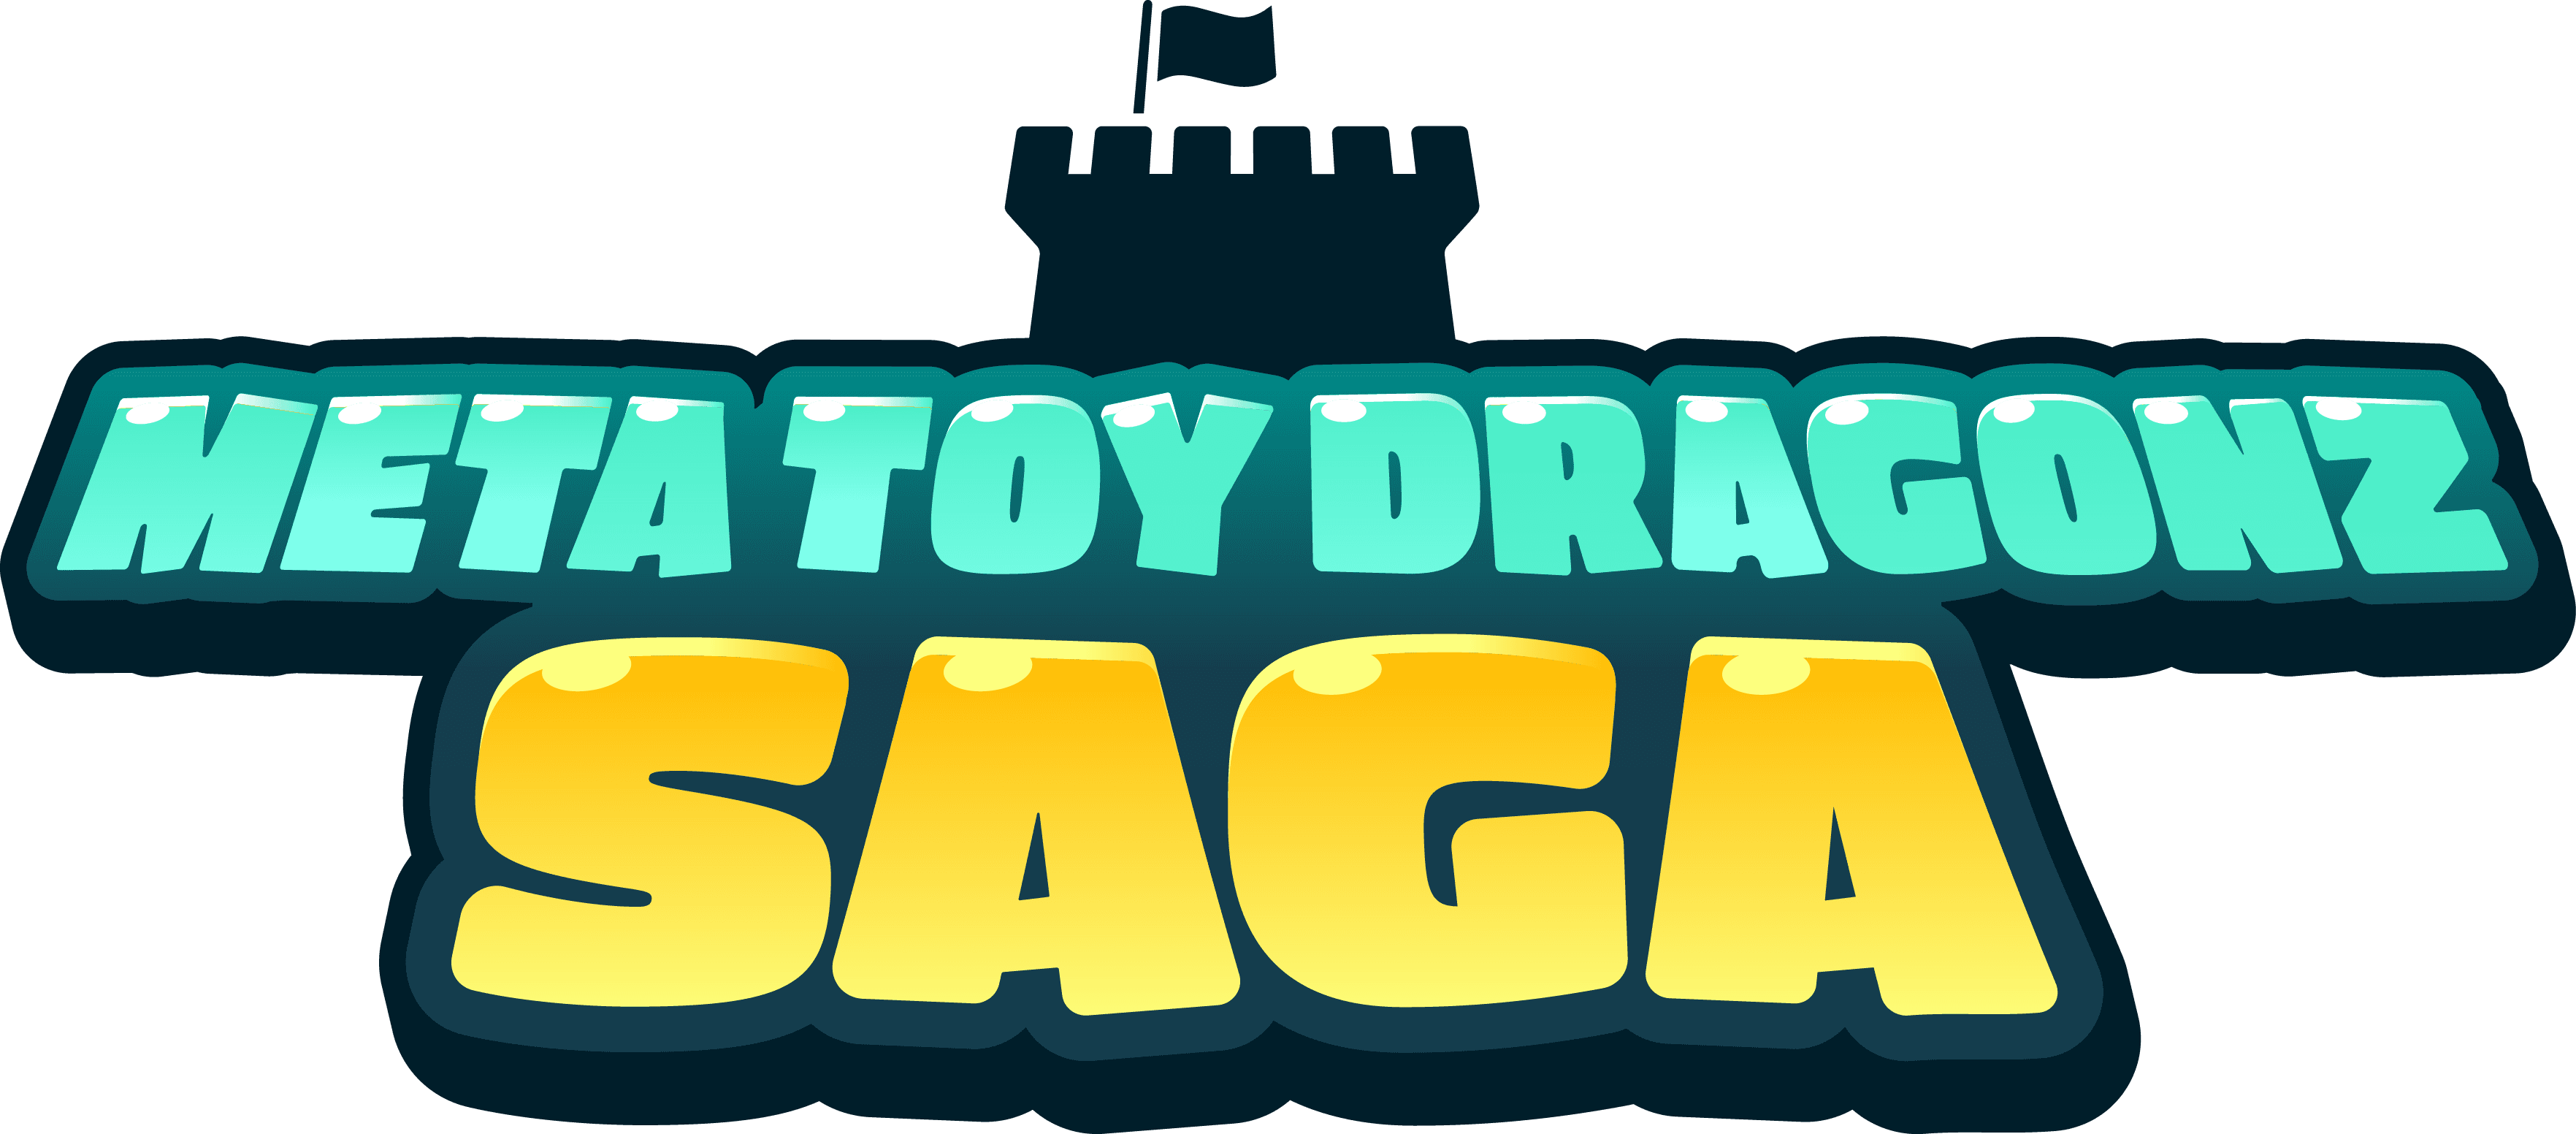 Meta Toy DragonZ SAGA